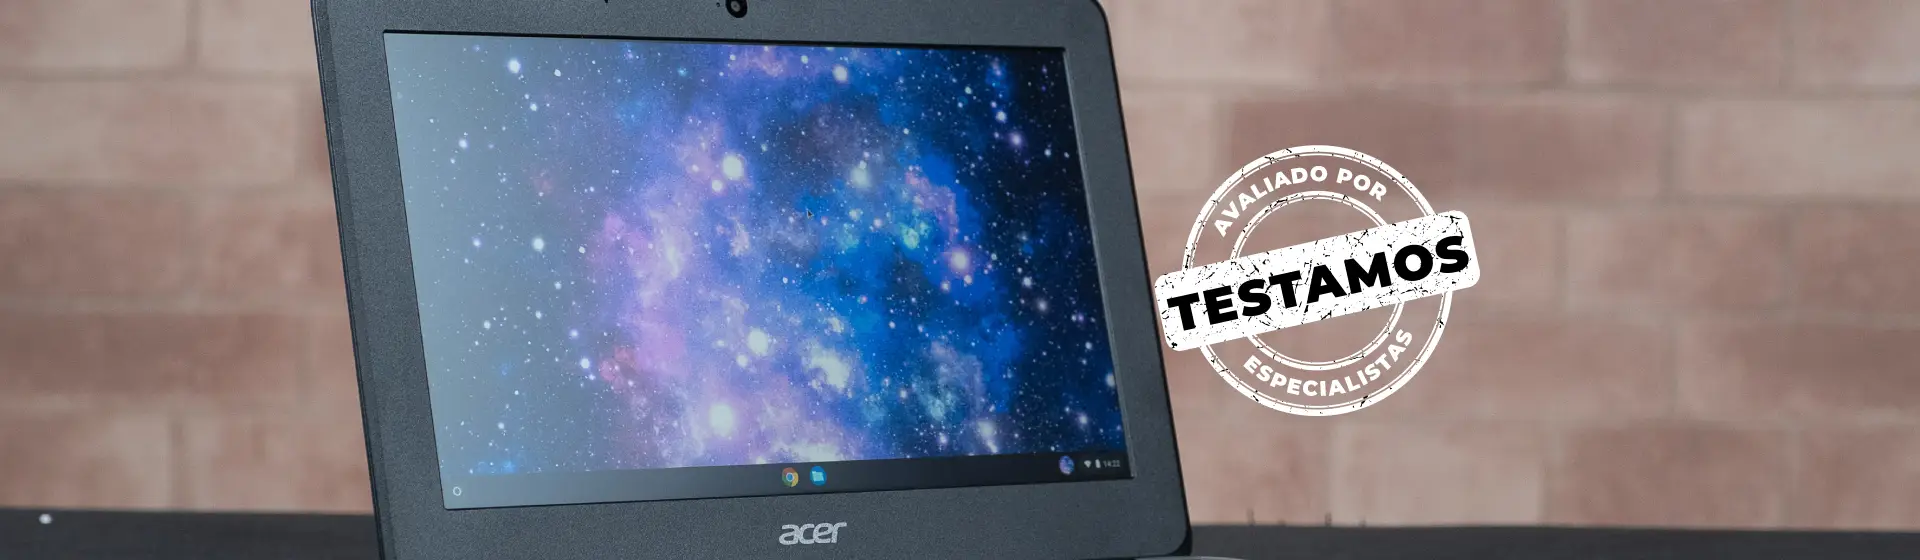 Tela do Acer Chromebook com selo branco ao lado com os dizeres "Testamos - Avaliado por especialistas"